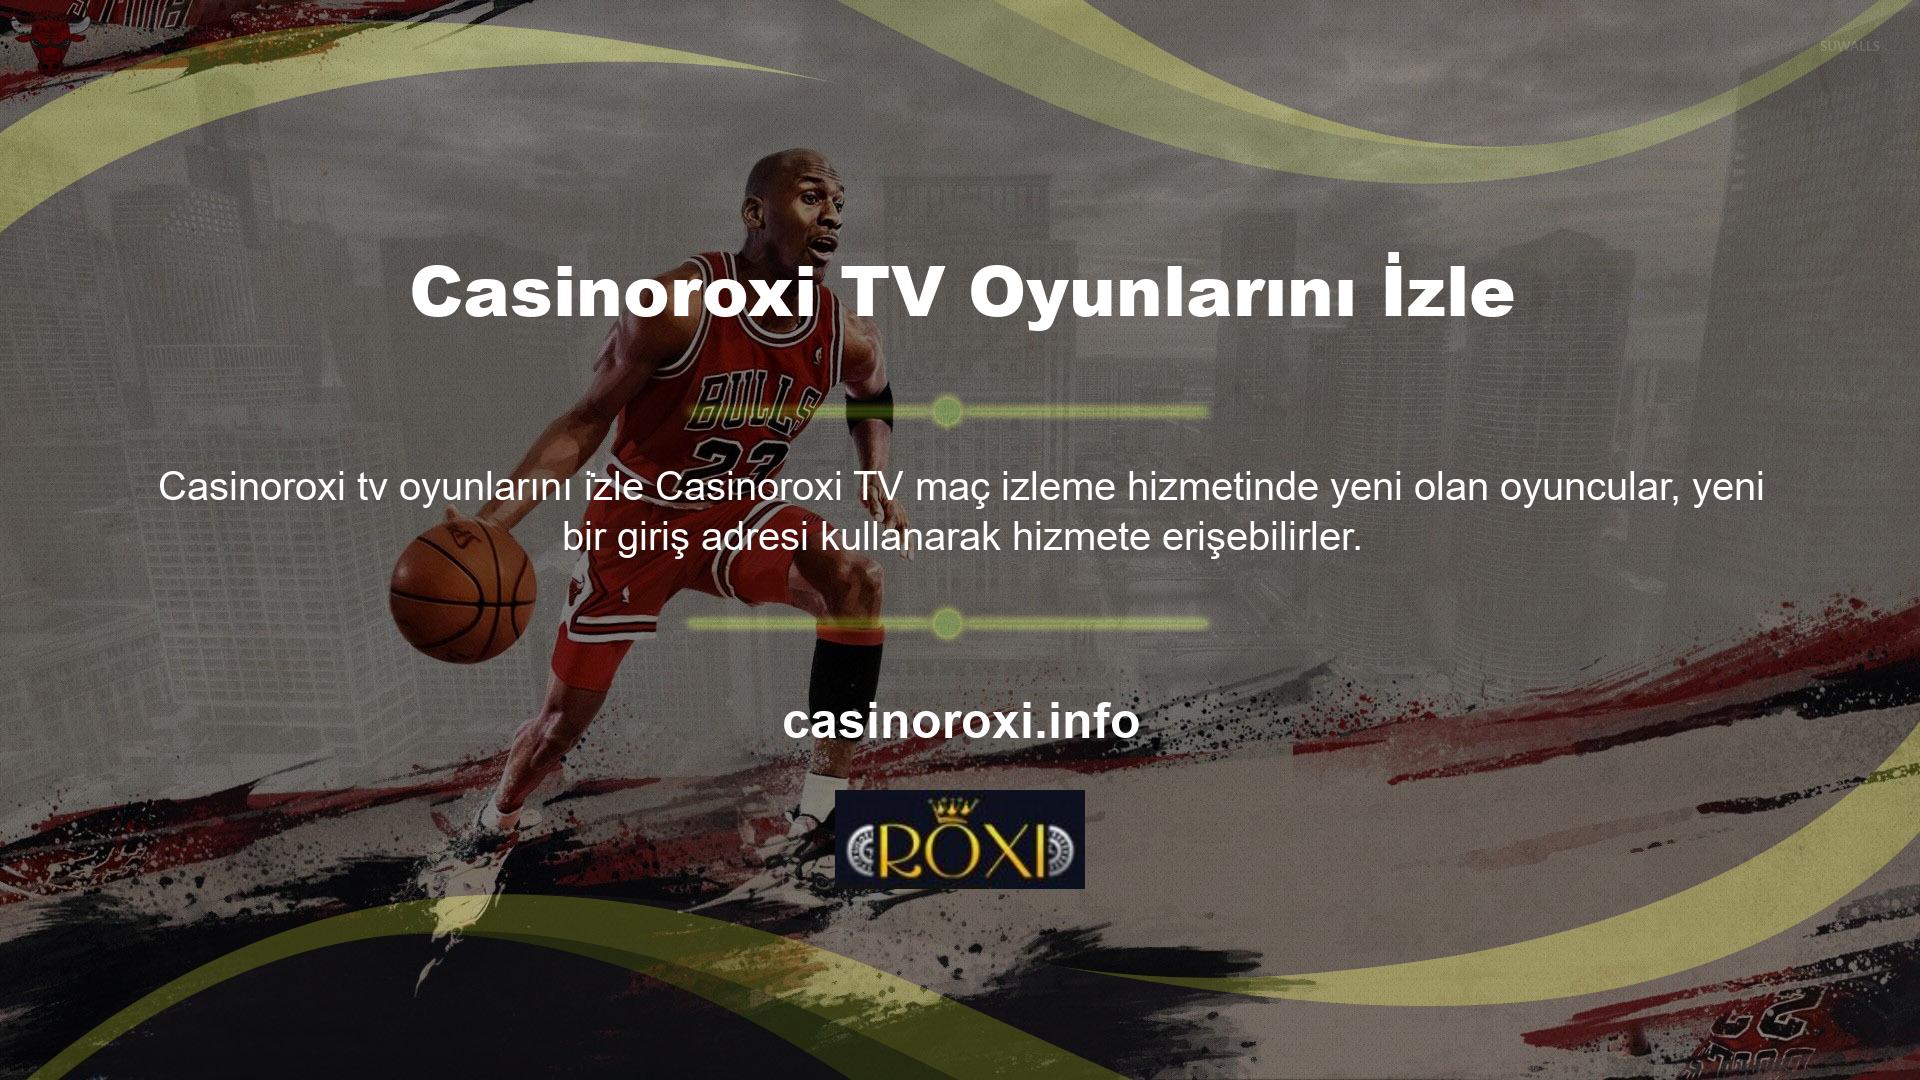 Casinoroxi web sitesi milyonlarca kullanıcıya yeni, yüksek kaliteli canlı TV oyun yayın hizmetleri sunuyor